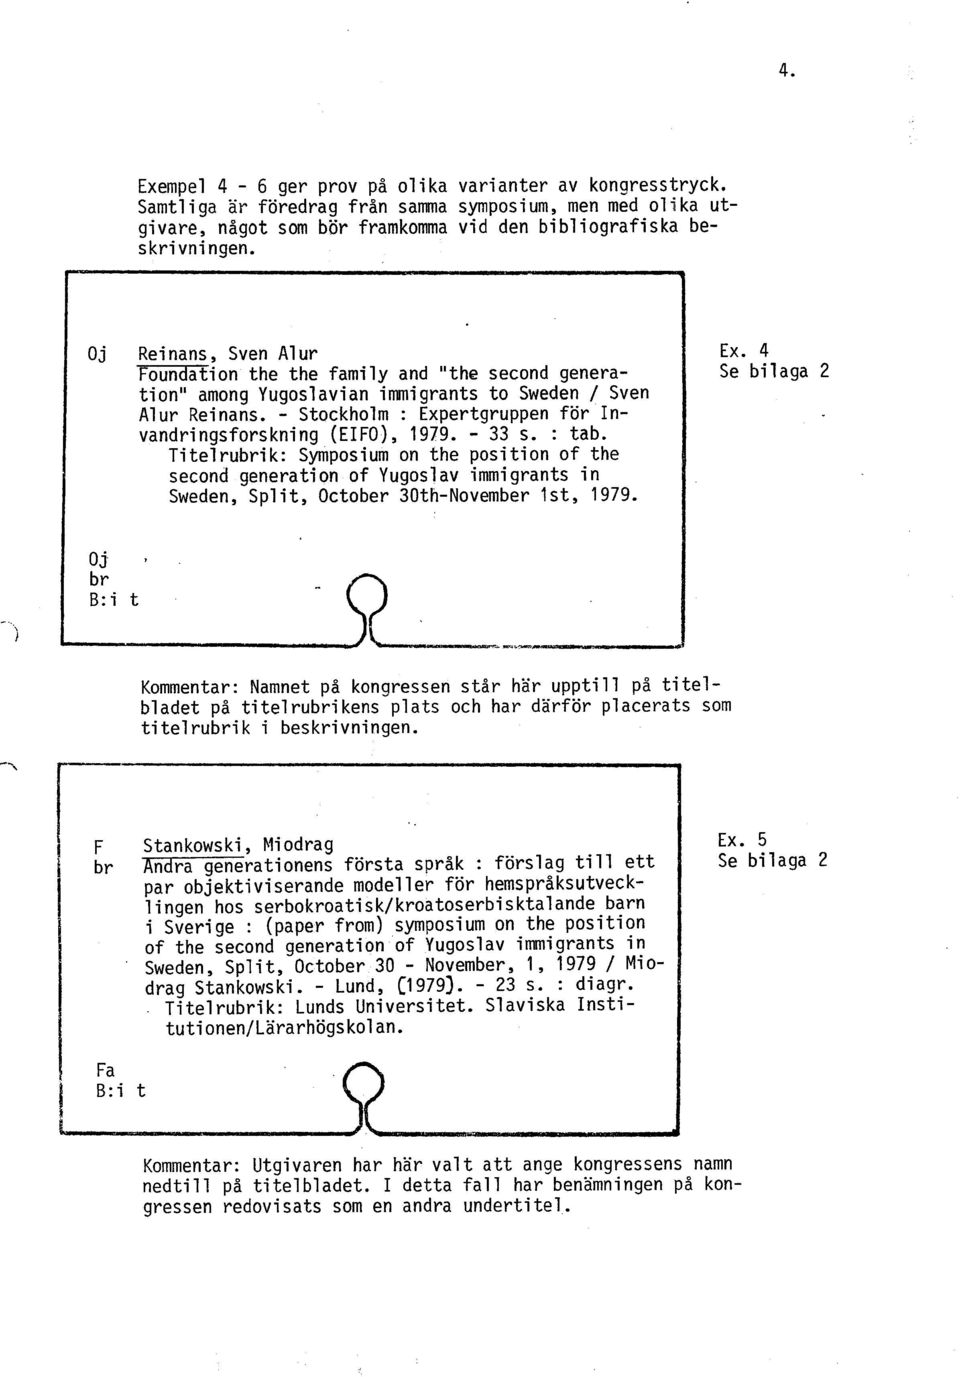 - Stockholm : Expertgruppen för Invandringsforskning (EIFO), 1979. - 33 s. : tab.